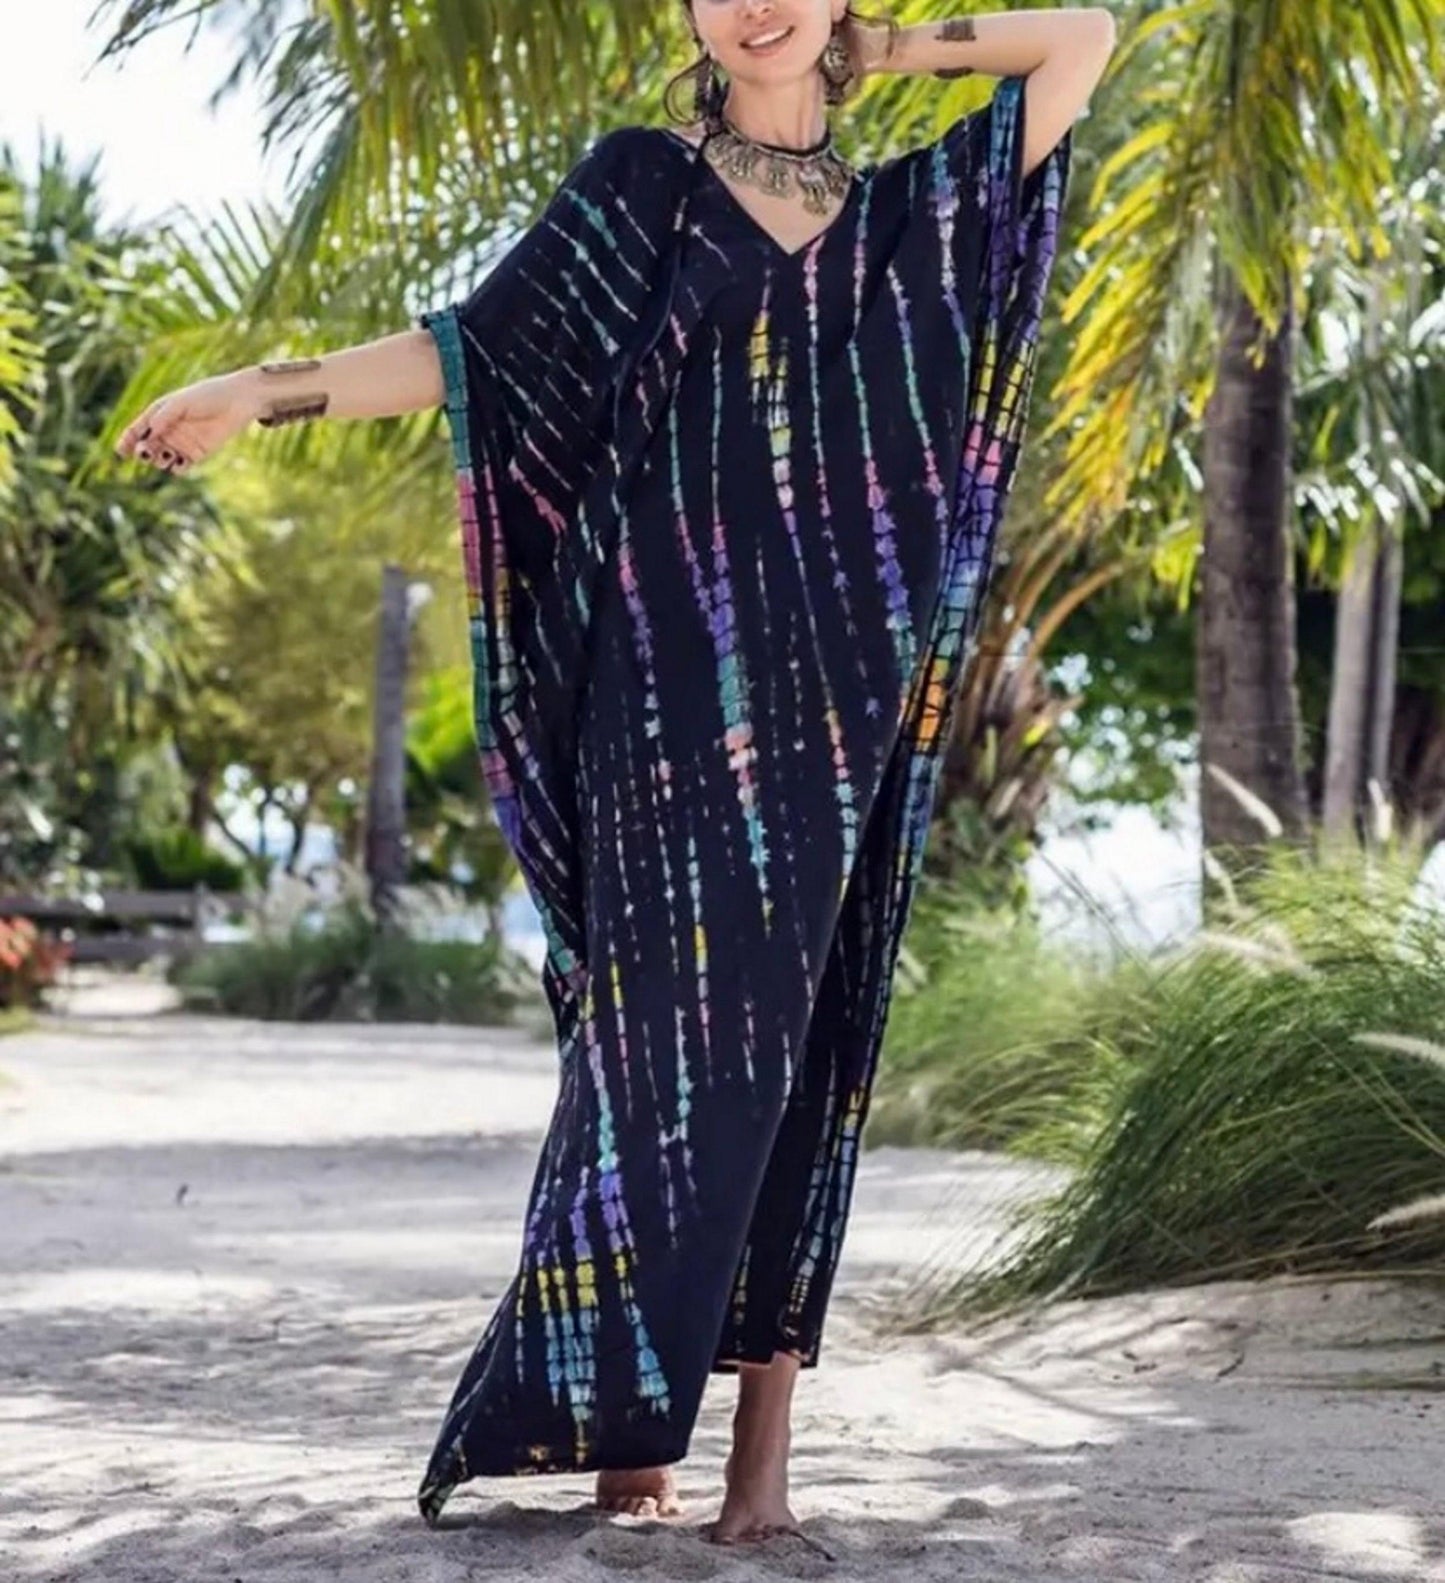 Bohemian Kaftan, Boho Retro Striped Tie Dye Women Swimsuit Cover Up, Beach Dress Kaftan - Sandrine Swank